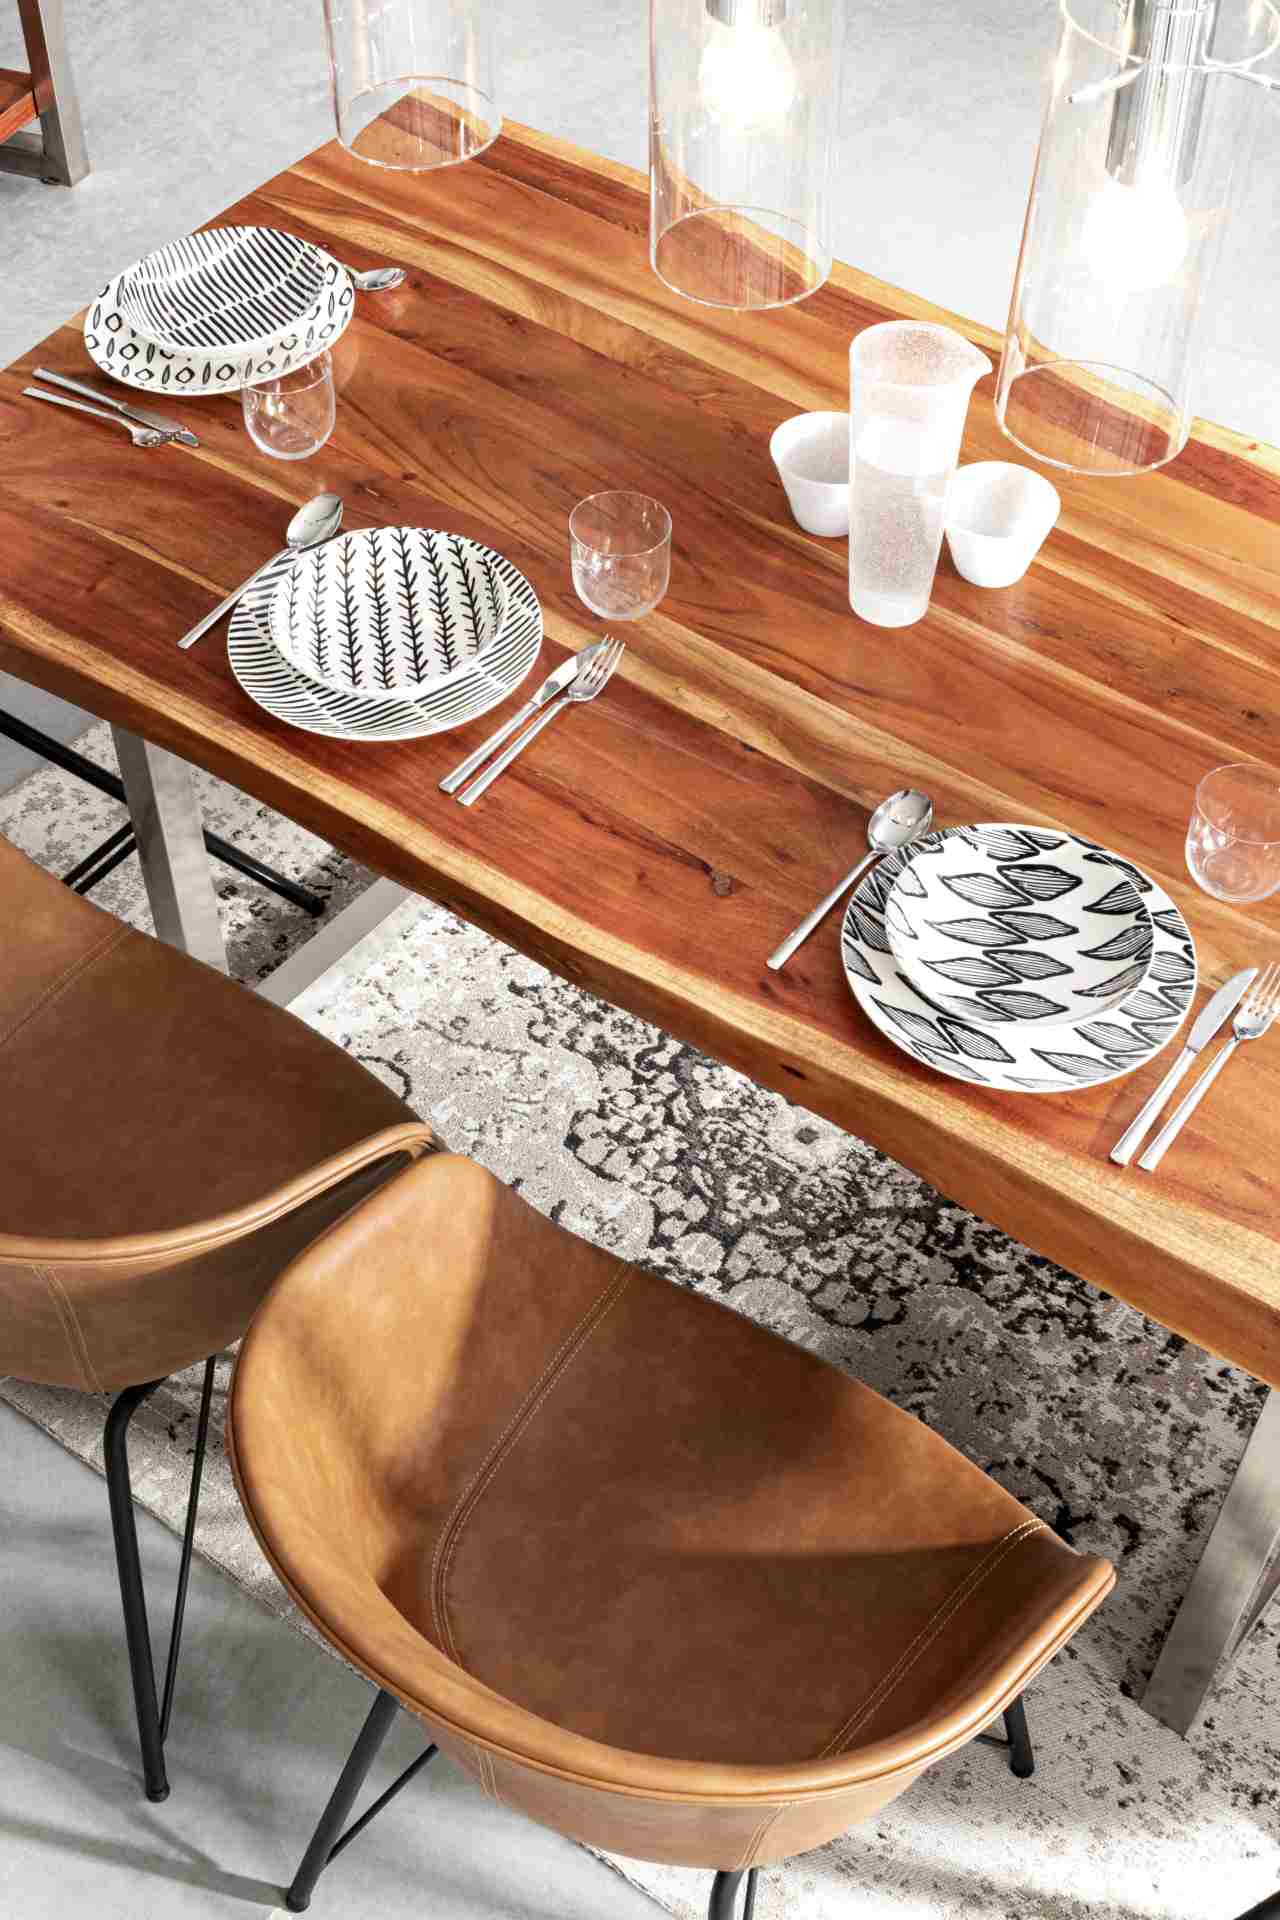 Der Esstisch Osbert überzeugt mit seinem moderndem Design. Gefertigt wurde er aus Akazienholz, welches einen natürlichen Farbton besitzt. Das Gestell des Tisches ist aus Metall und ist in eine silberne Farbe. Der Tisch besitzt eine Breite von 180 cm.